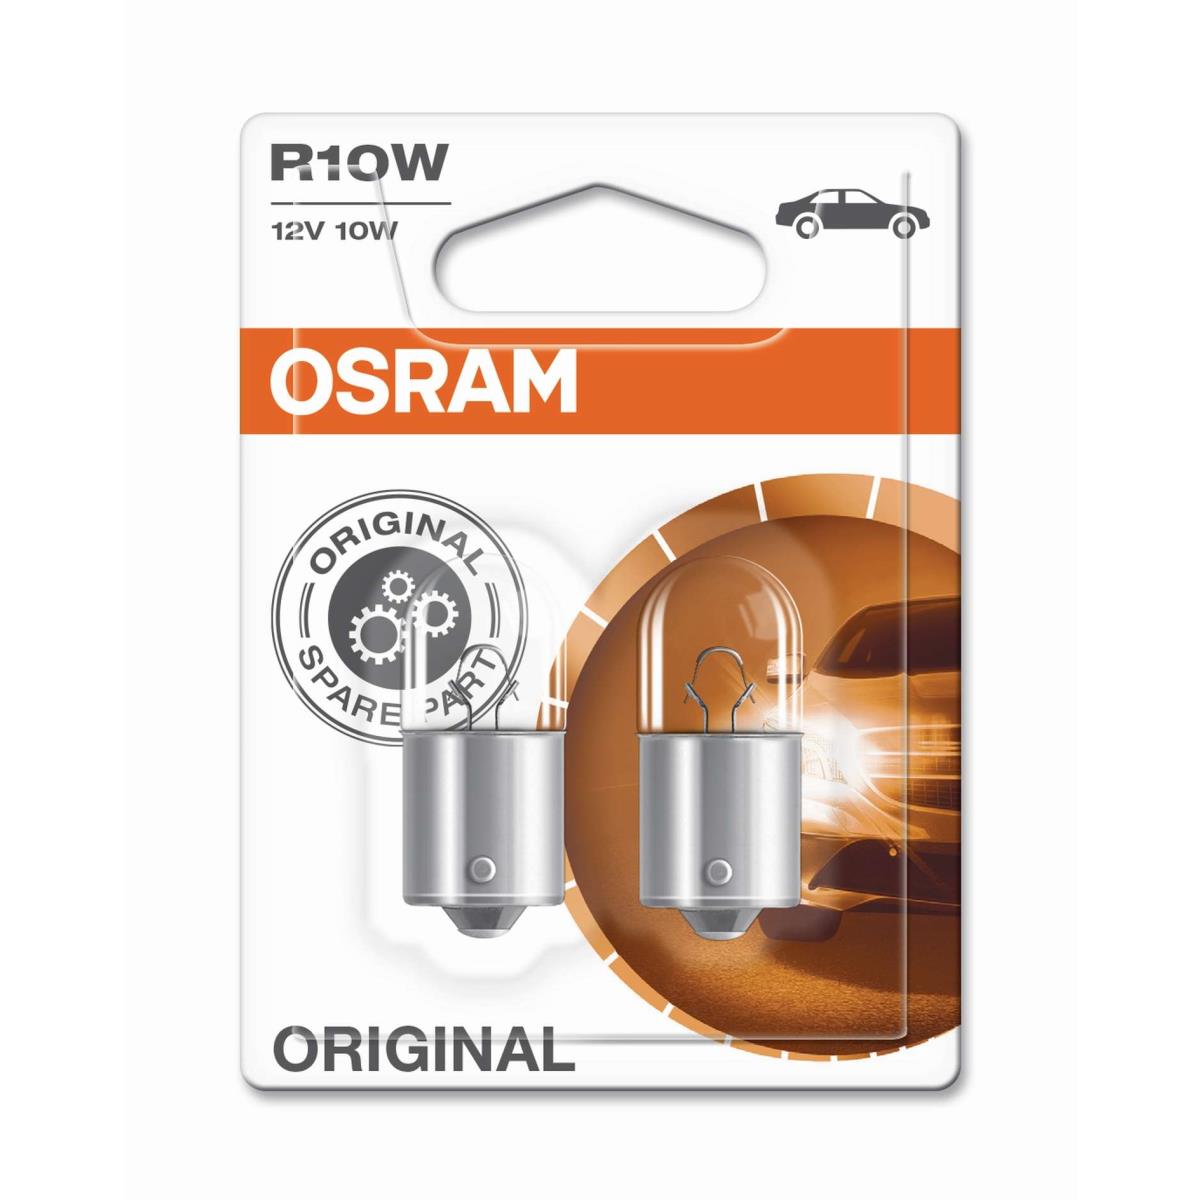 OSRAM R10W 12V/10W Sockel BA15s Lebensdauer B3/Tc 350h/800h